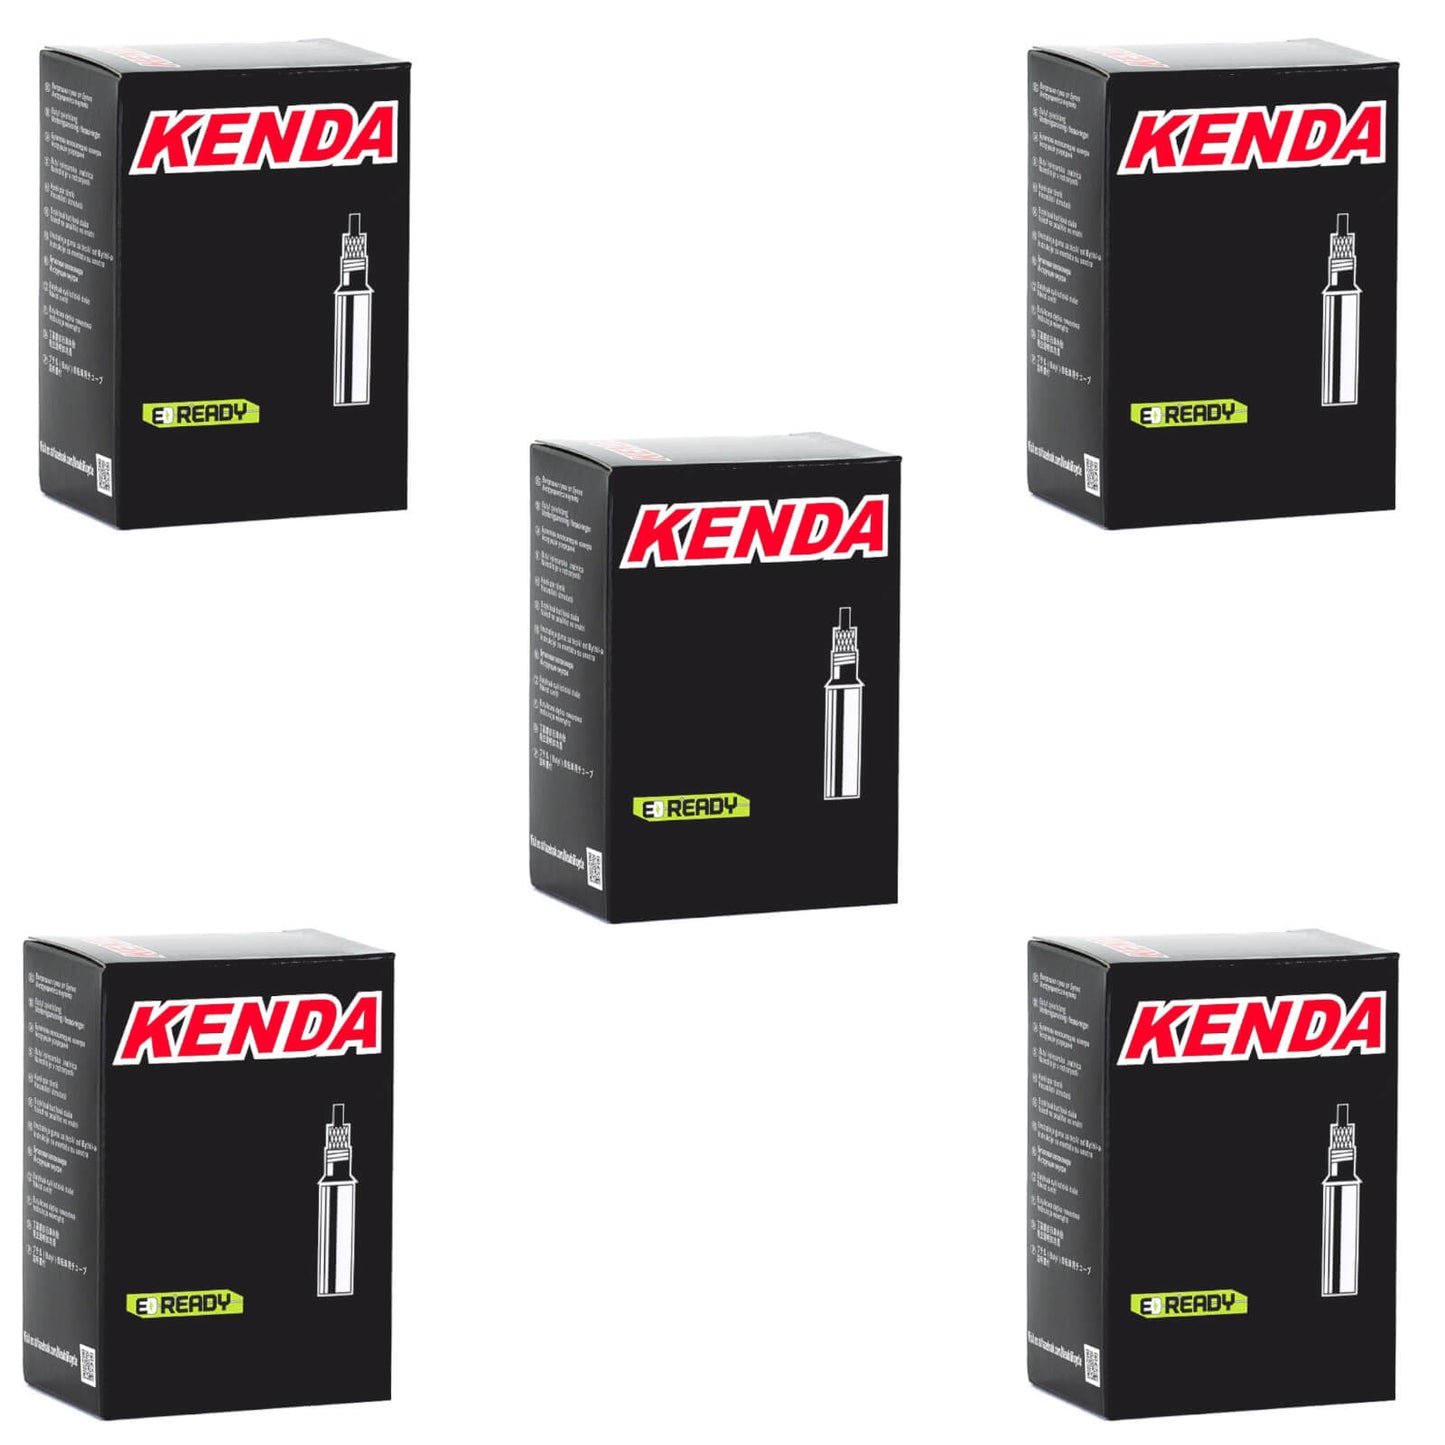 Kenda 700x20-28c Removable Core SL 80mm 700c Presta Valve Bike Inner Tube Pack of 5